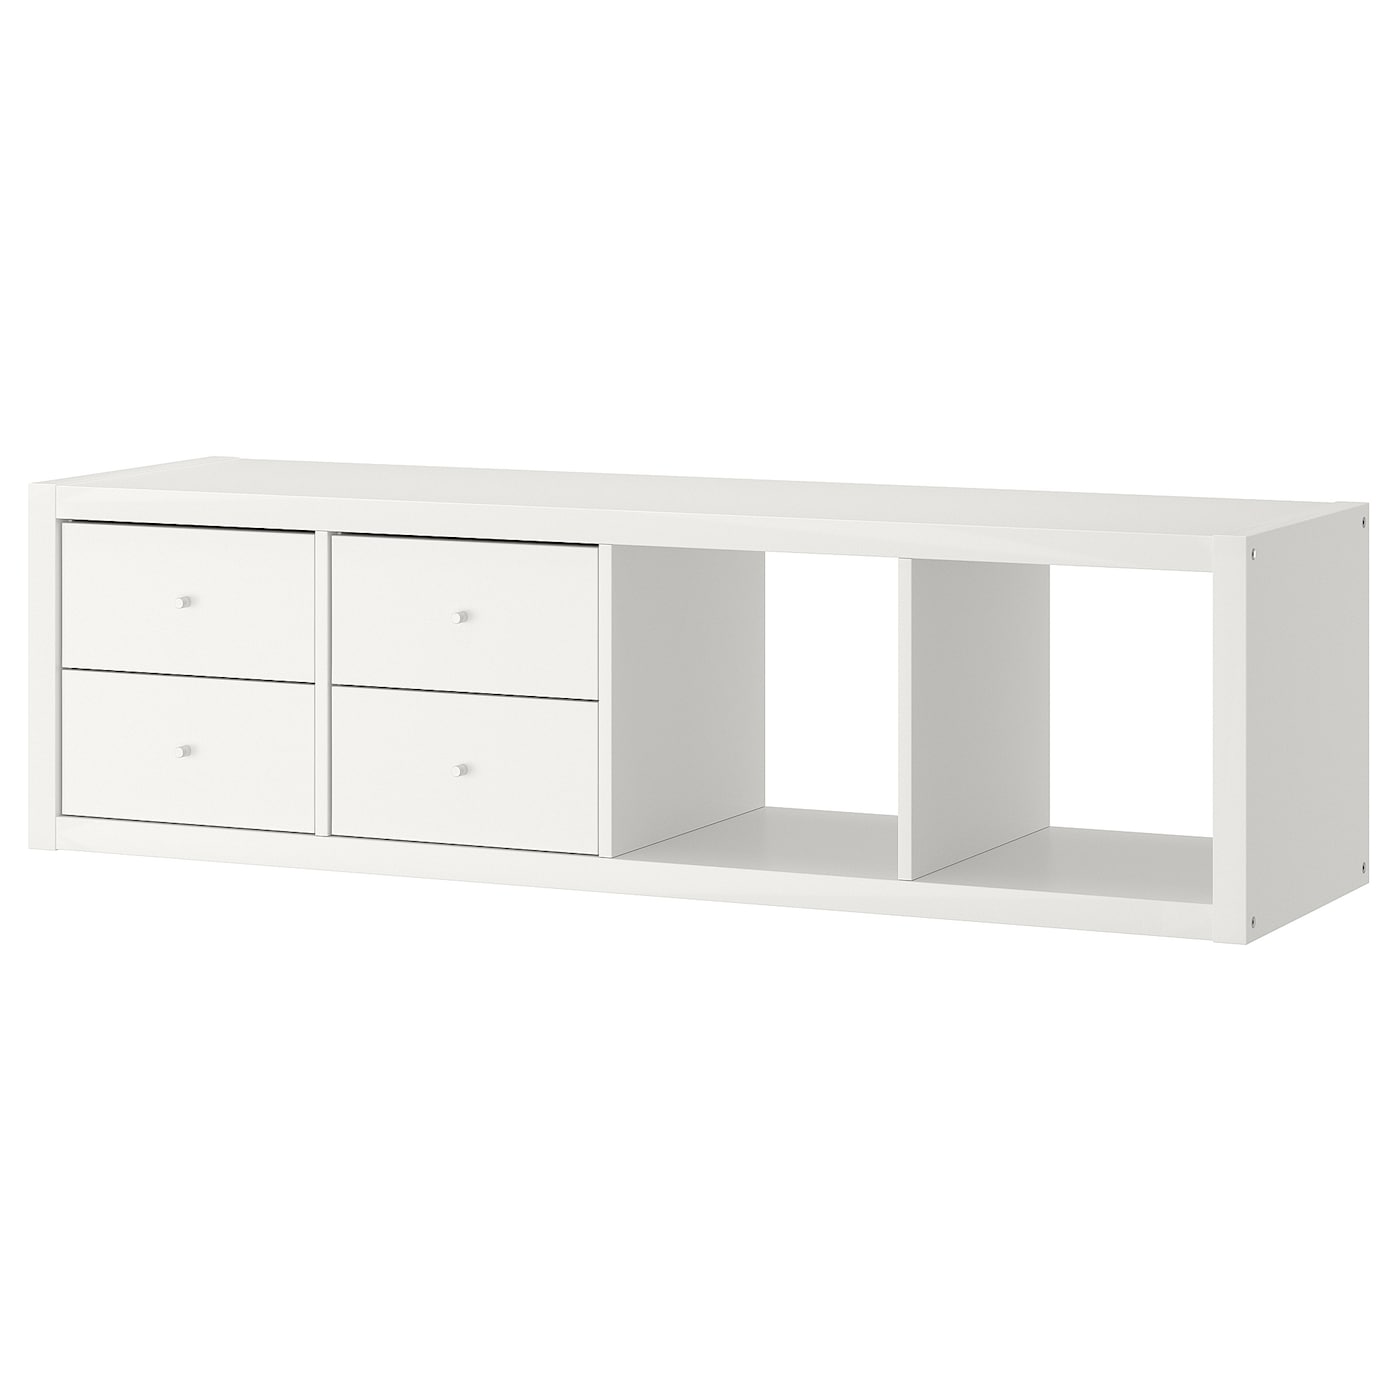 Стеллаж 4 ячейки с ящиками - IKEA KALLAX, 42х147 см, белый, КАЛЛАКС ИКЕА